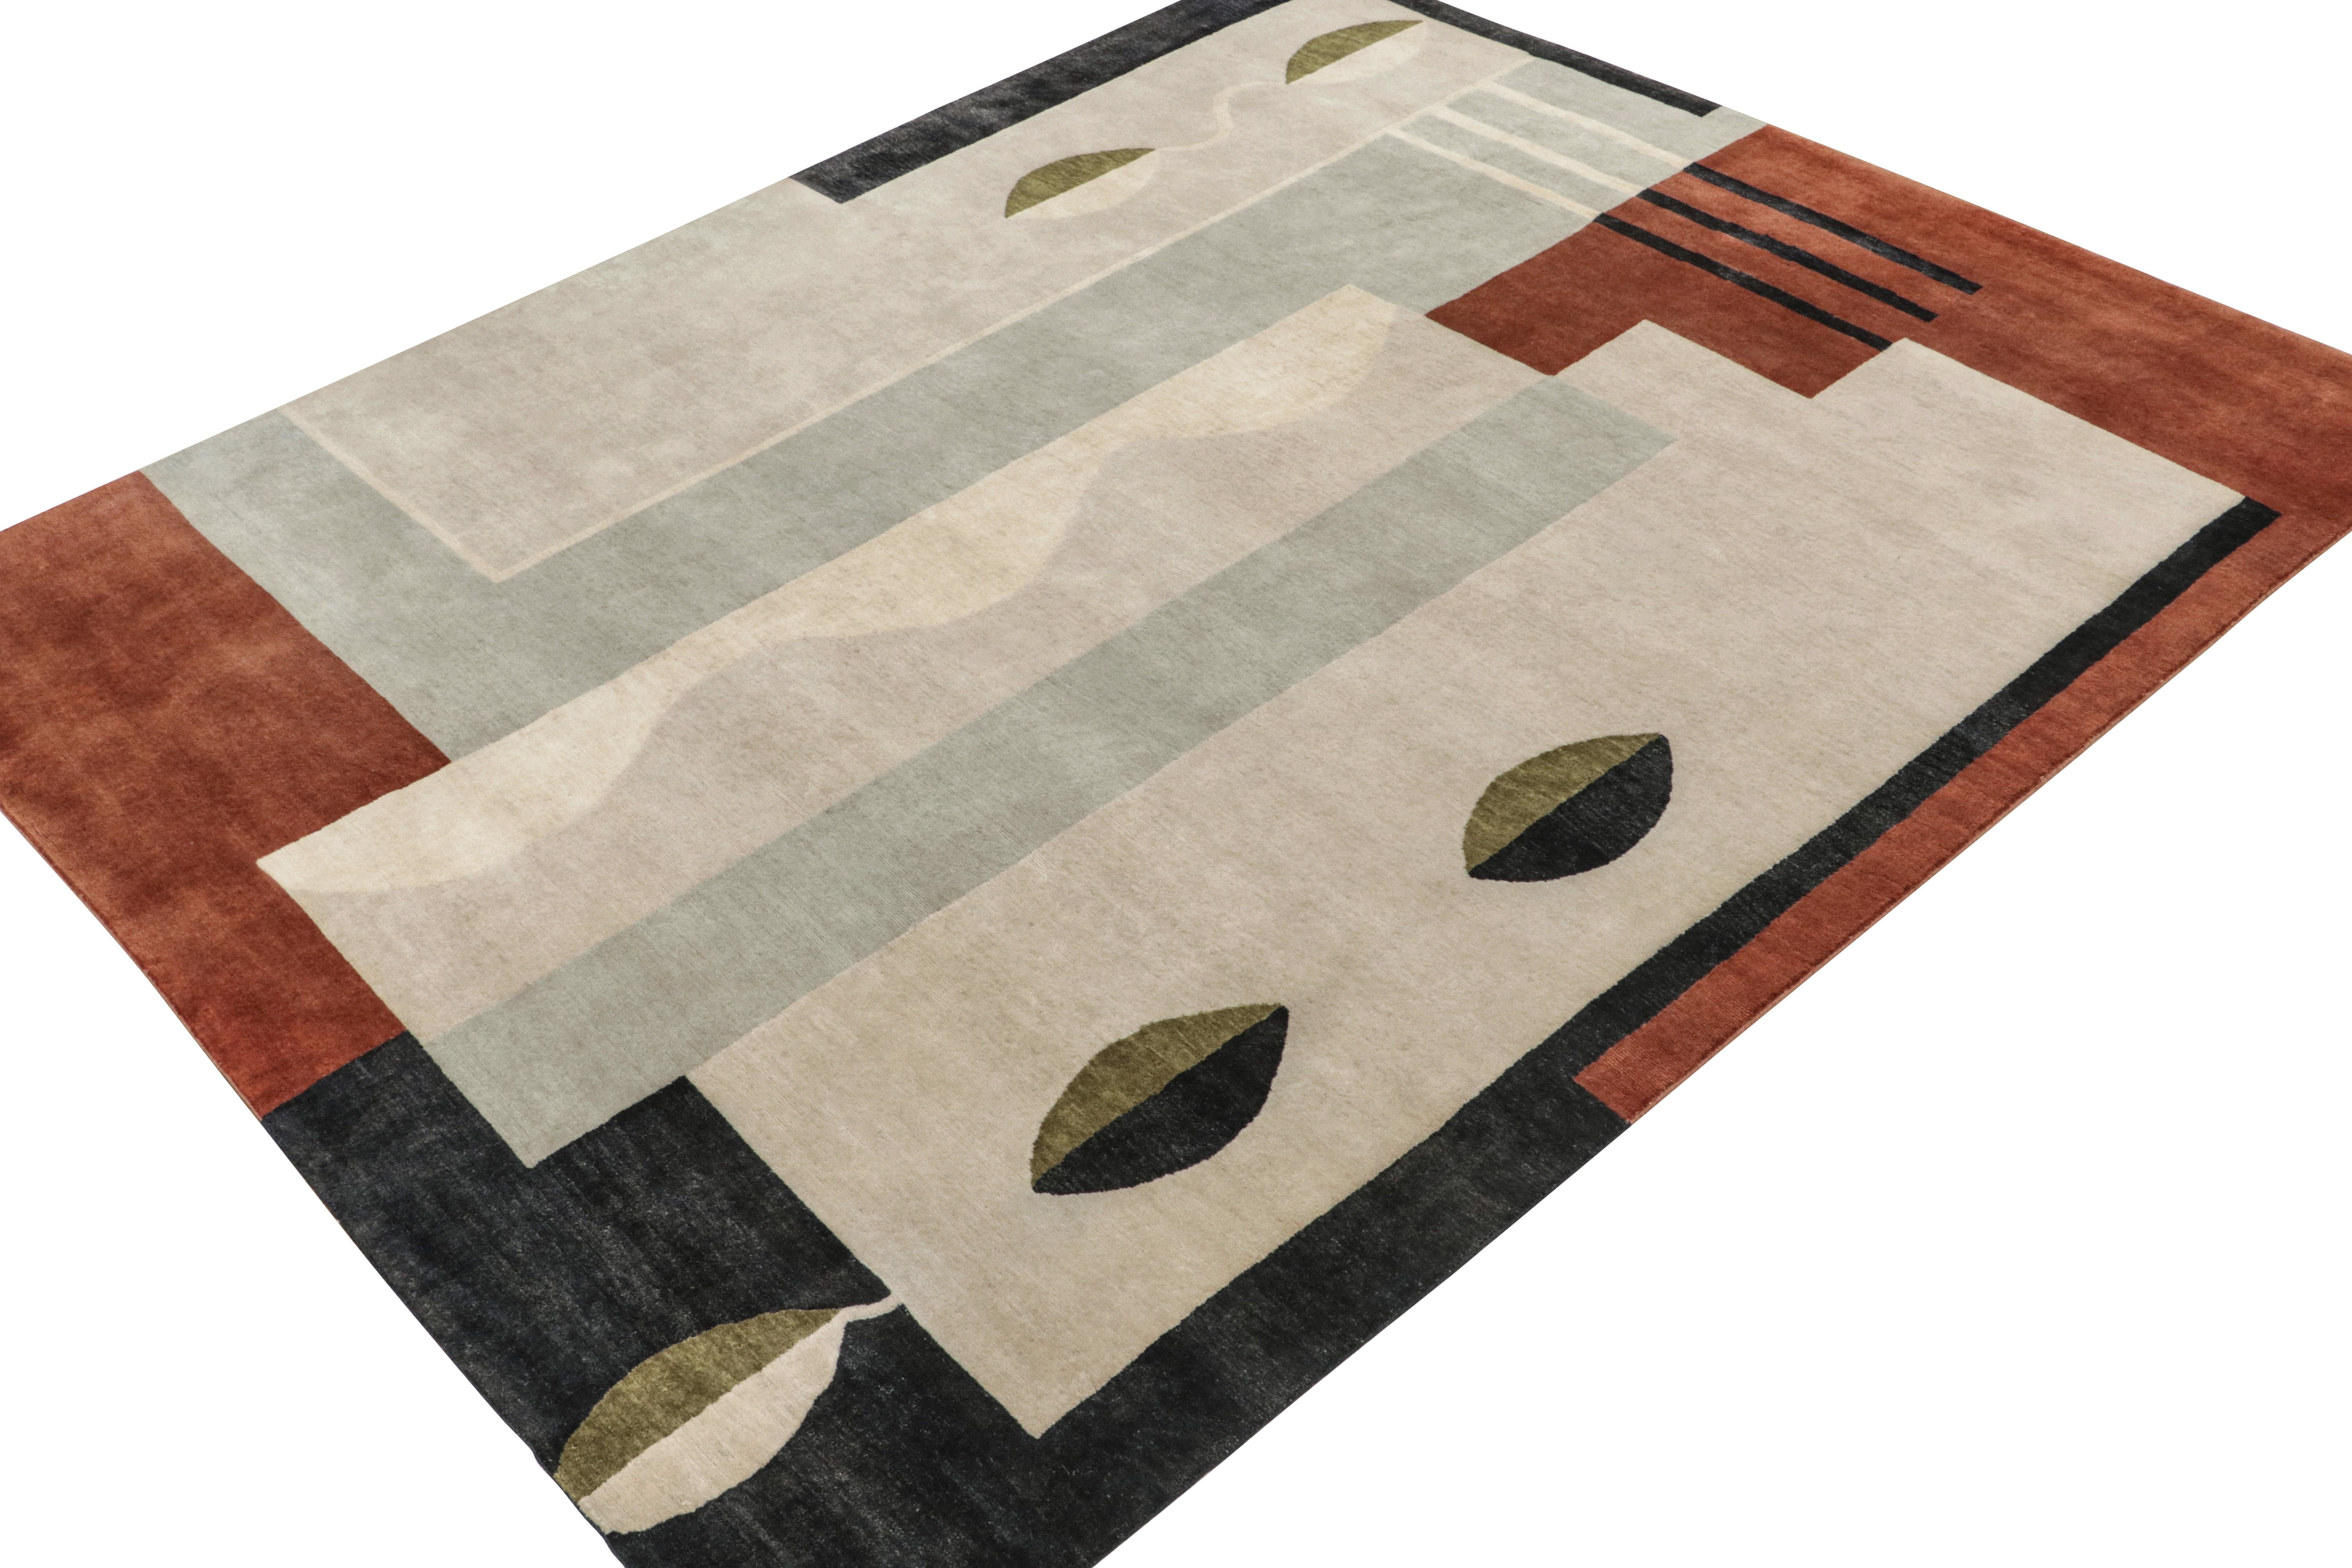 Ce tapis 8x10 est le prochain ajout à la Collection French Deco d'inspiration classique de Rug & Kilim. Noué à la main en laine, soie et coton, son design s'inspire des styles de tapis Art Deco des années 1920 dans une nouvelle qualité haut de